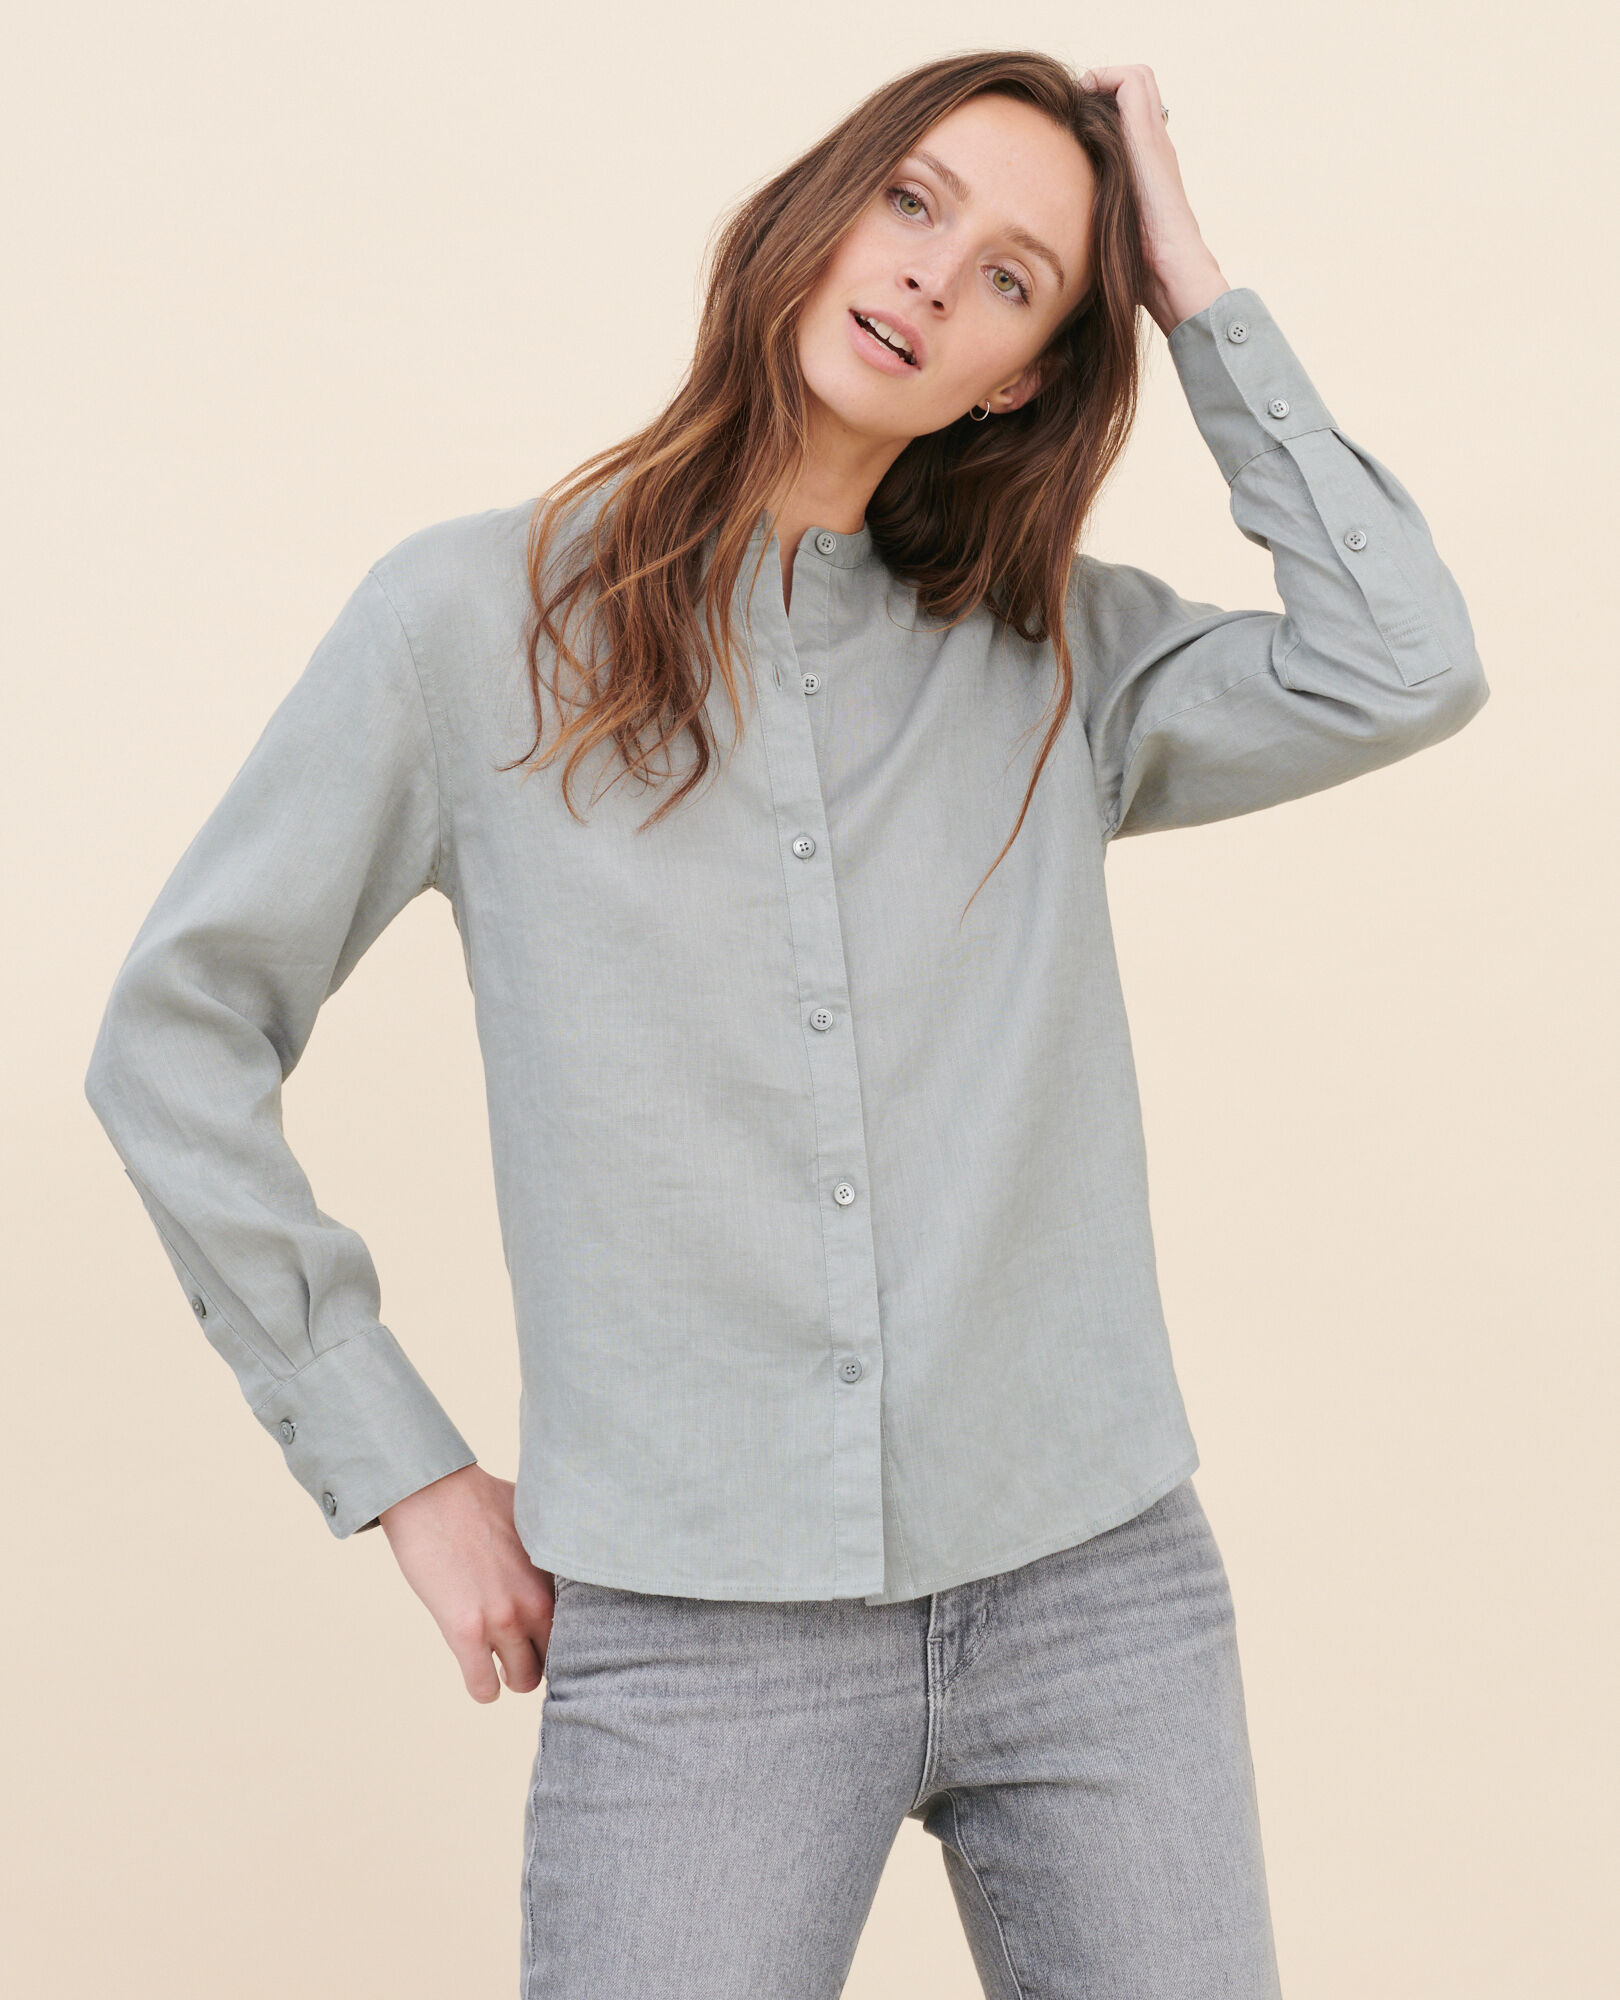 Collarless linen shirt 07 gray 2ssh233f04